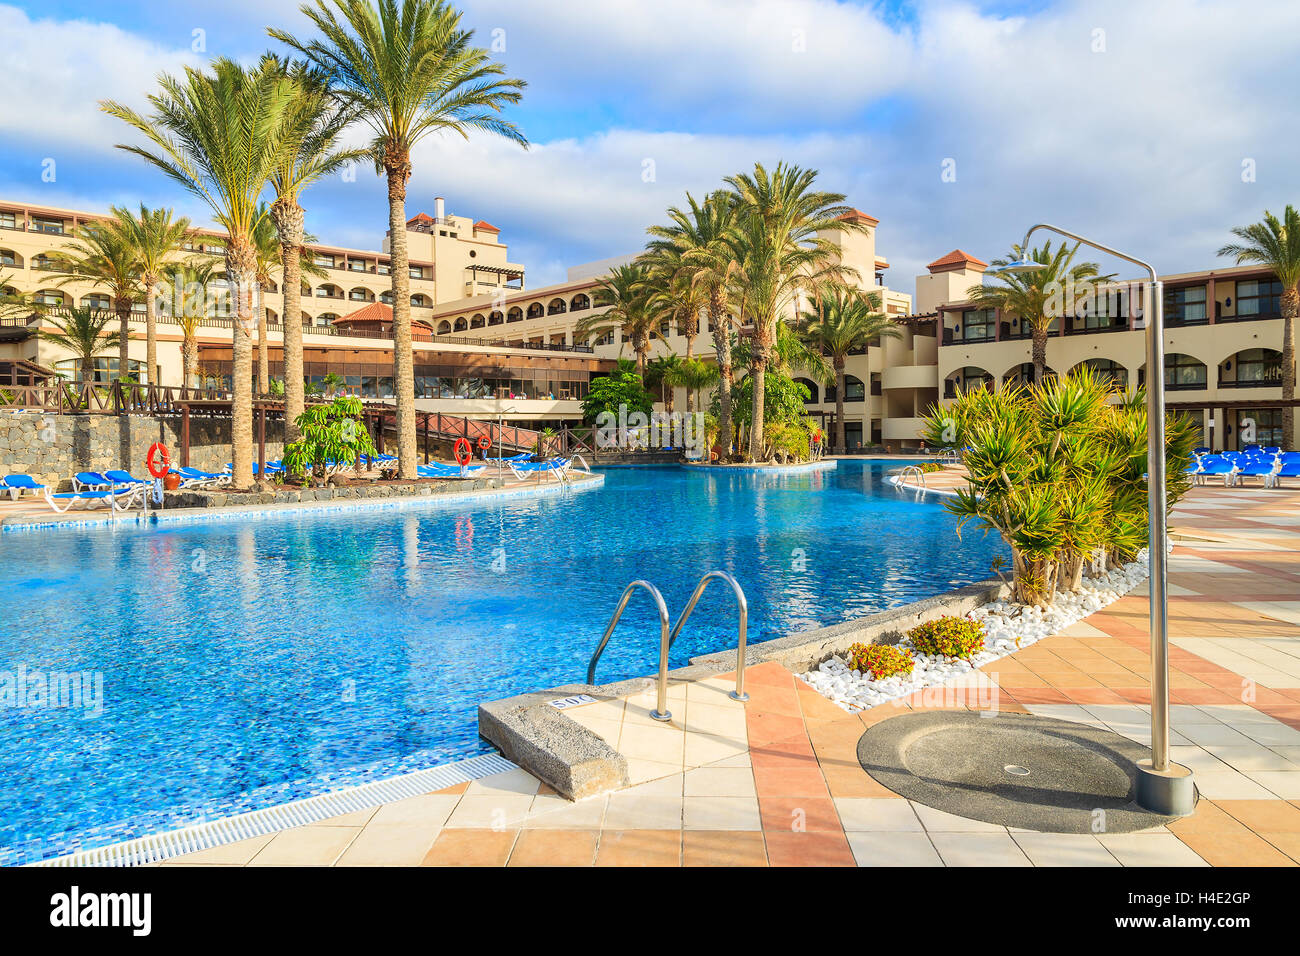 MORRO JABLE FUERTEVENTURA - DEC 6, 2014 : piscine d'un hôtel de luxe Barcelo Jandia Mar dans la ville de Morro Jable. C'est une destination de vacances populaire pour les touristes sur l'île de Fuerteventura. Banque D'Images